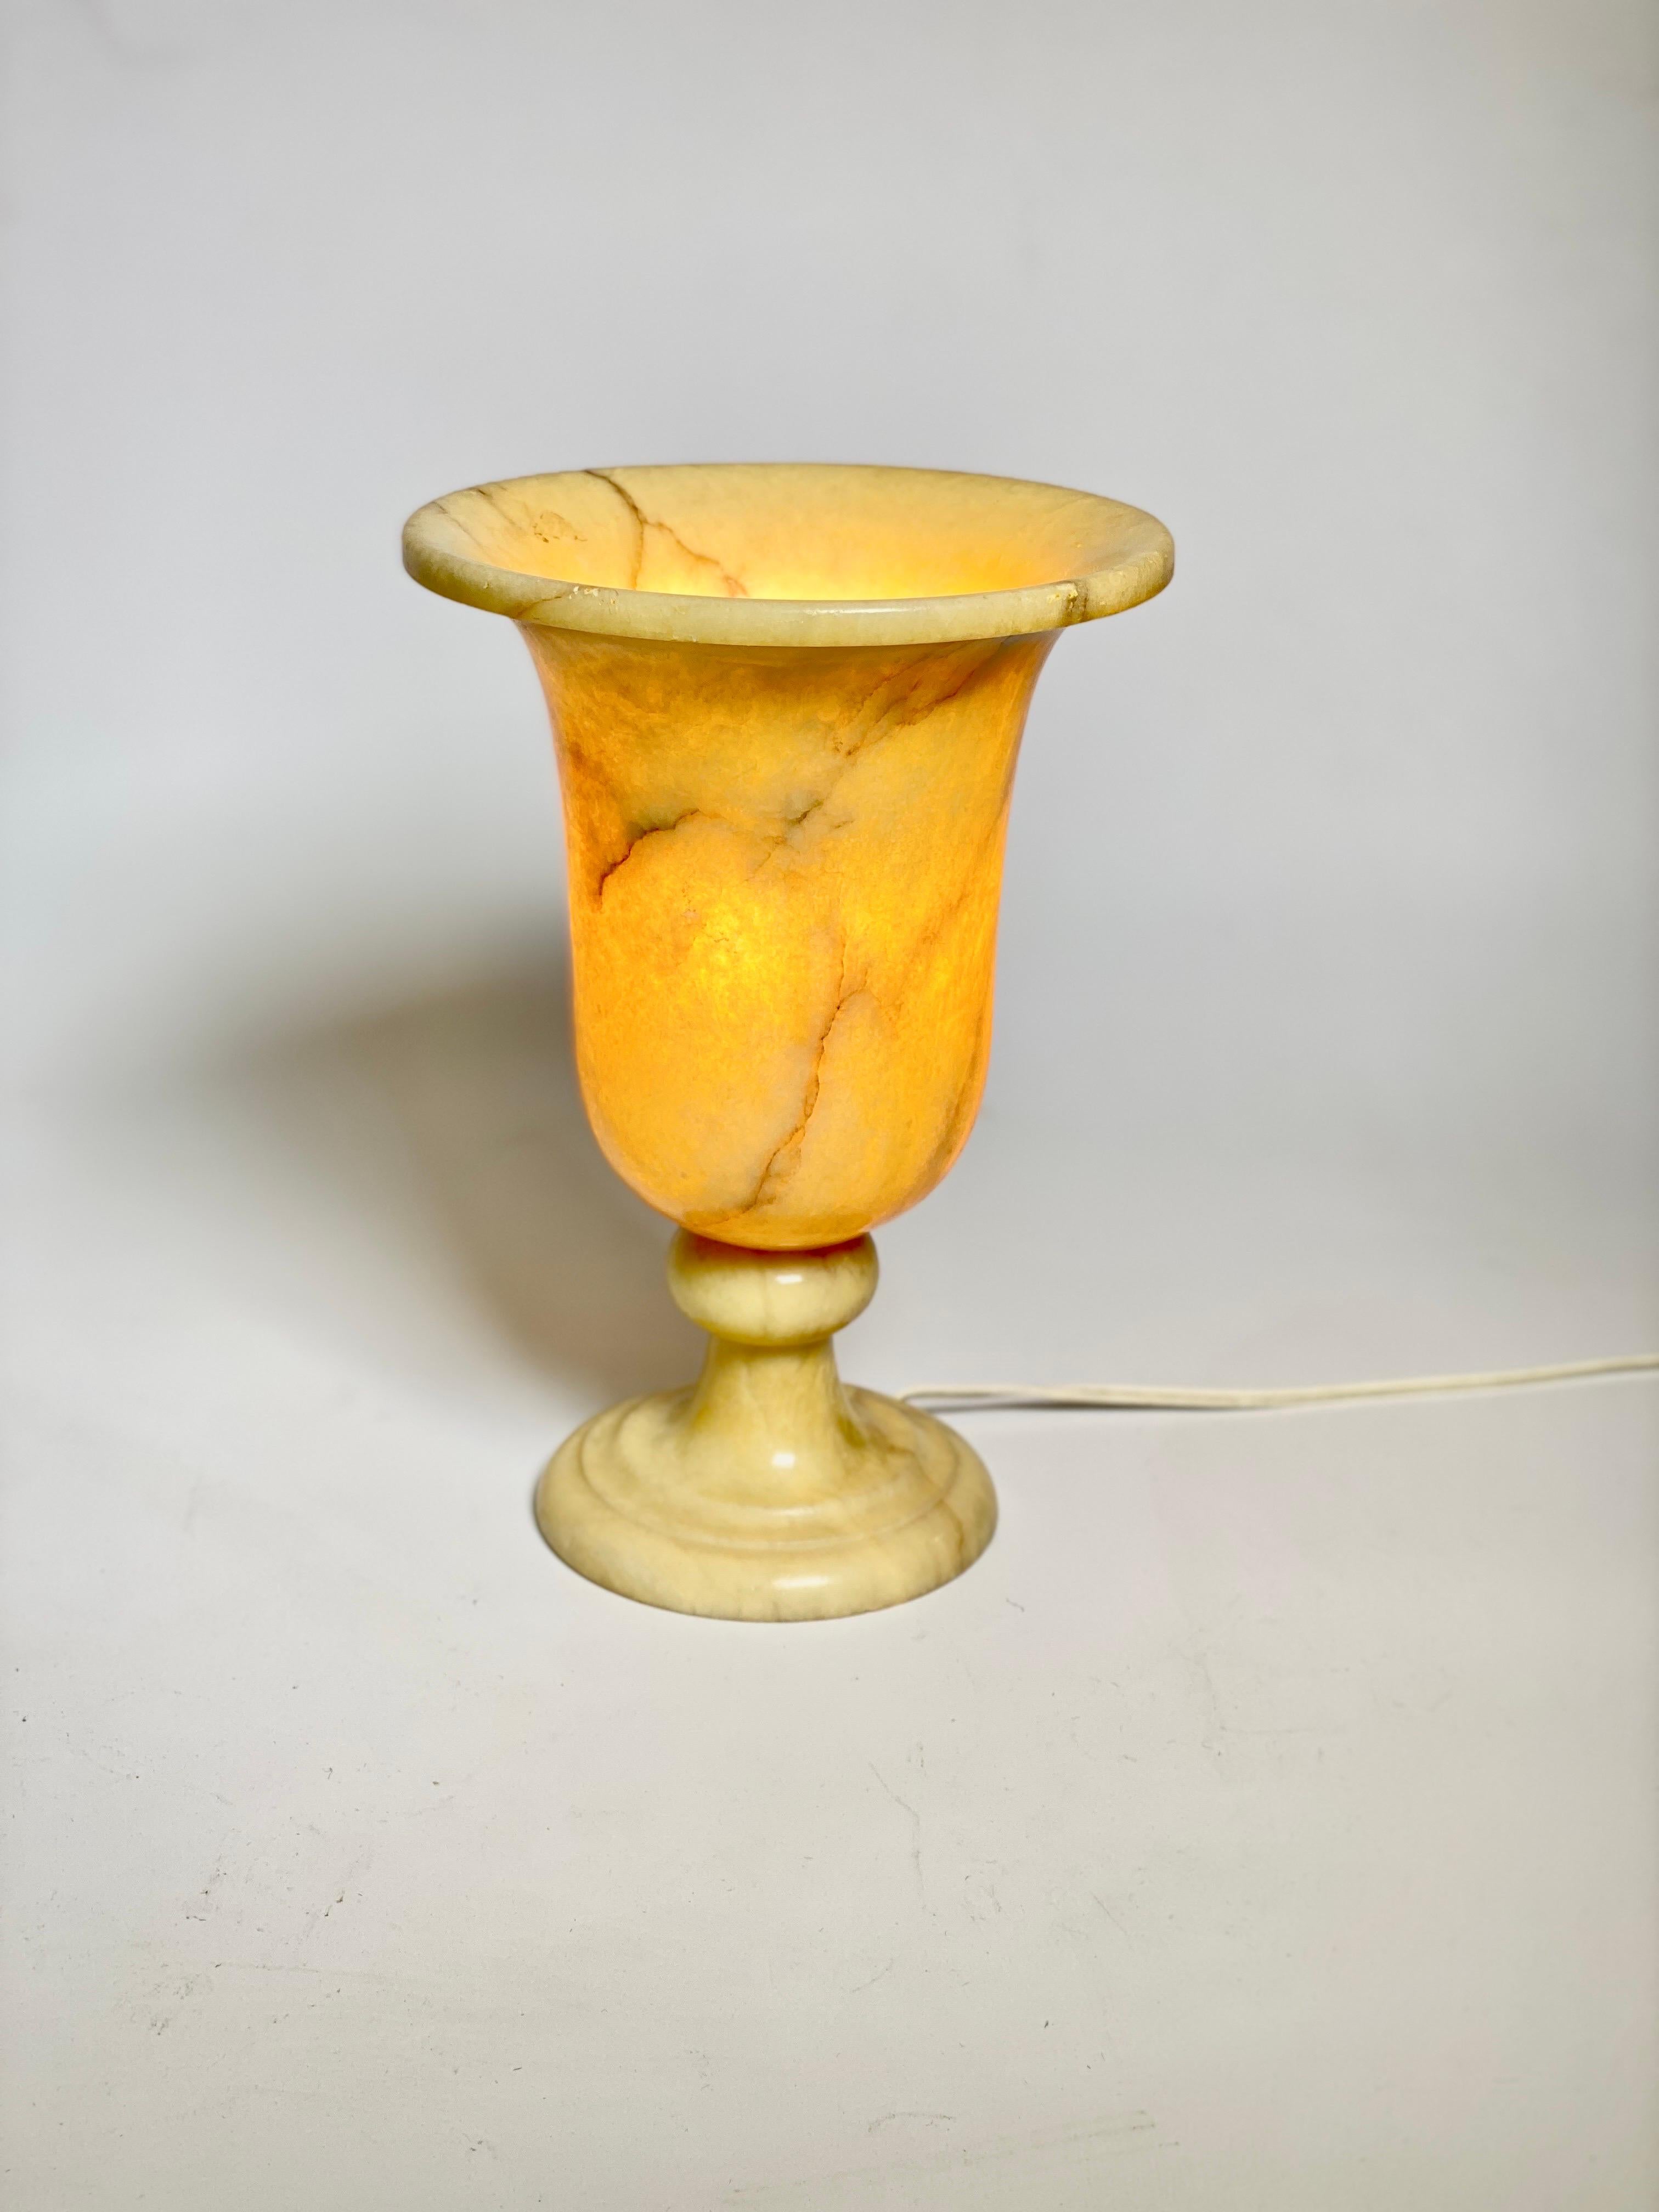 Lampe de table sculpturale en albâtre de type Urne de la période Art Déco avec un design néoclassique, France, années 1940.
Cette élégante lampe-urnes néoclassique en albâtre sculpté sera un bel ajout à une table console ou à une table